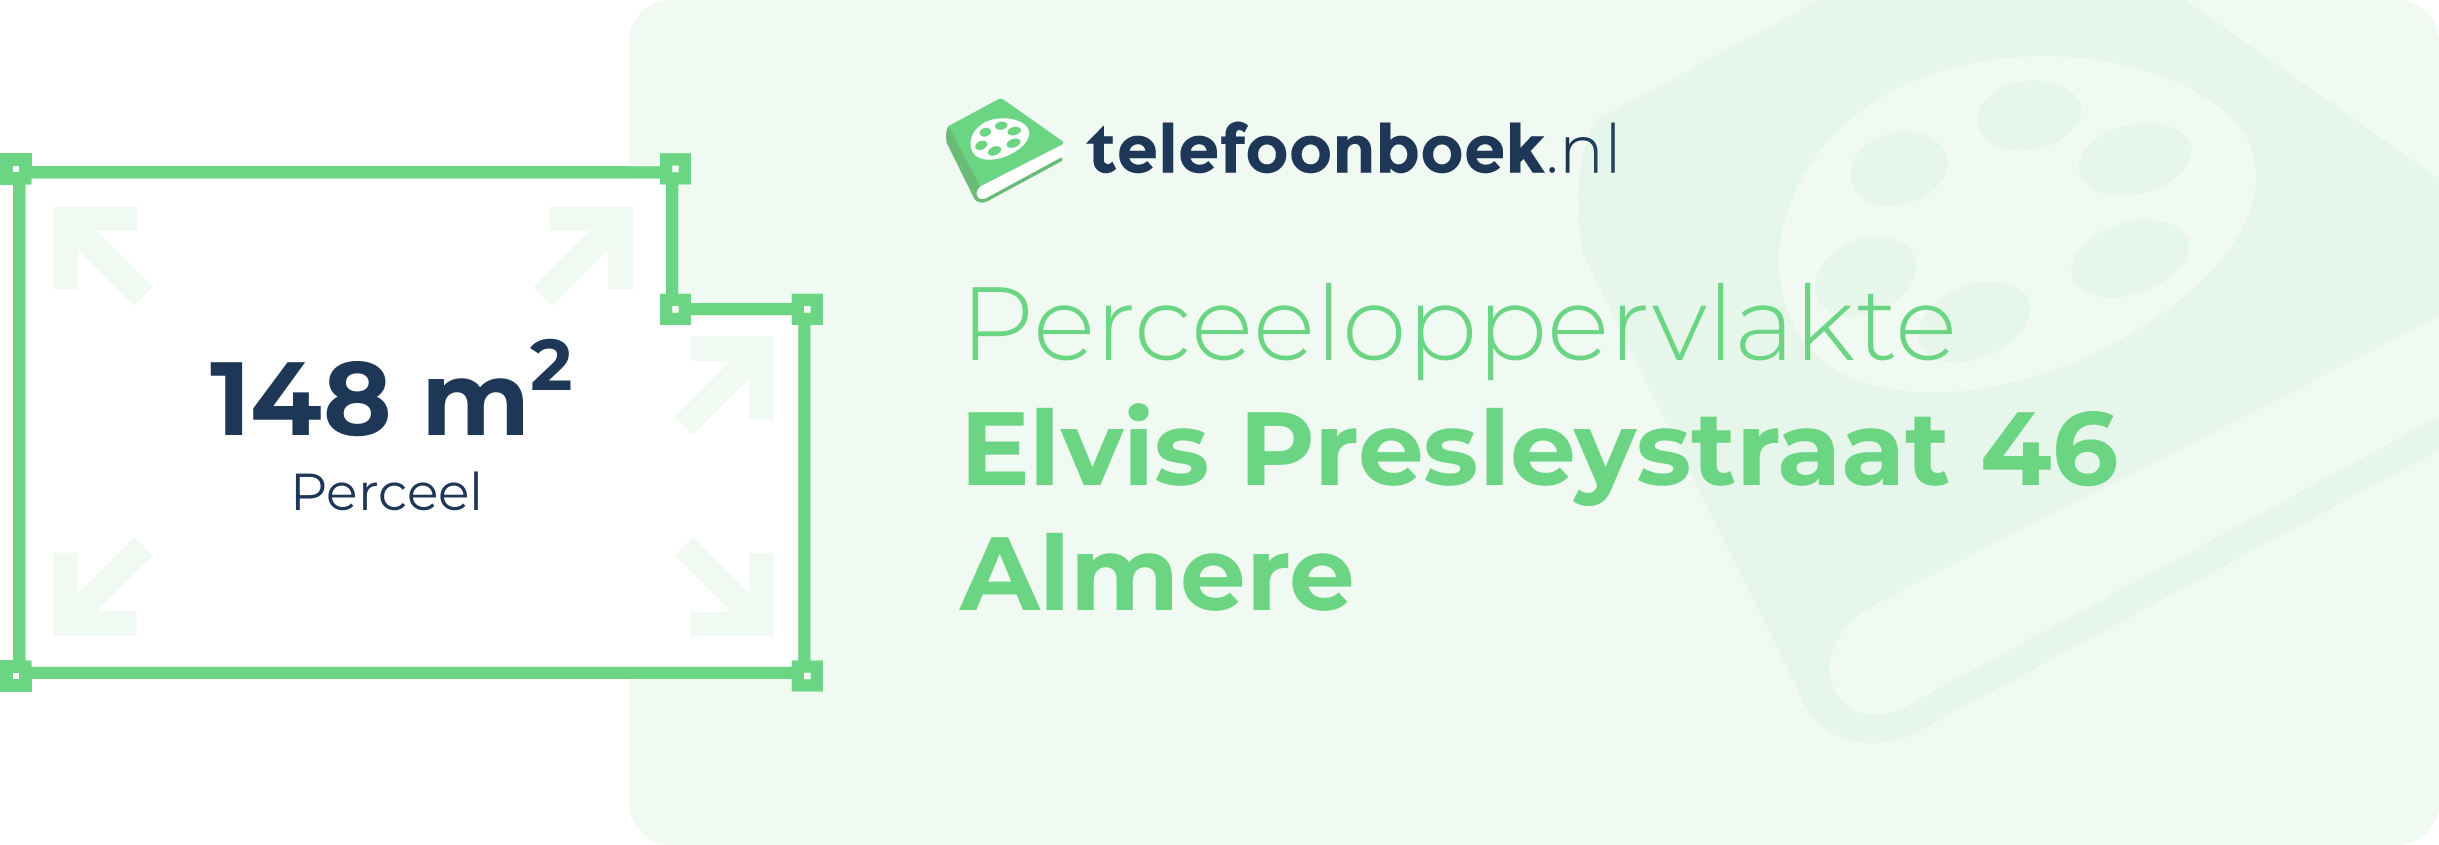 Perceeloppervlakte Elvis Presleystraat 46 Almere